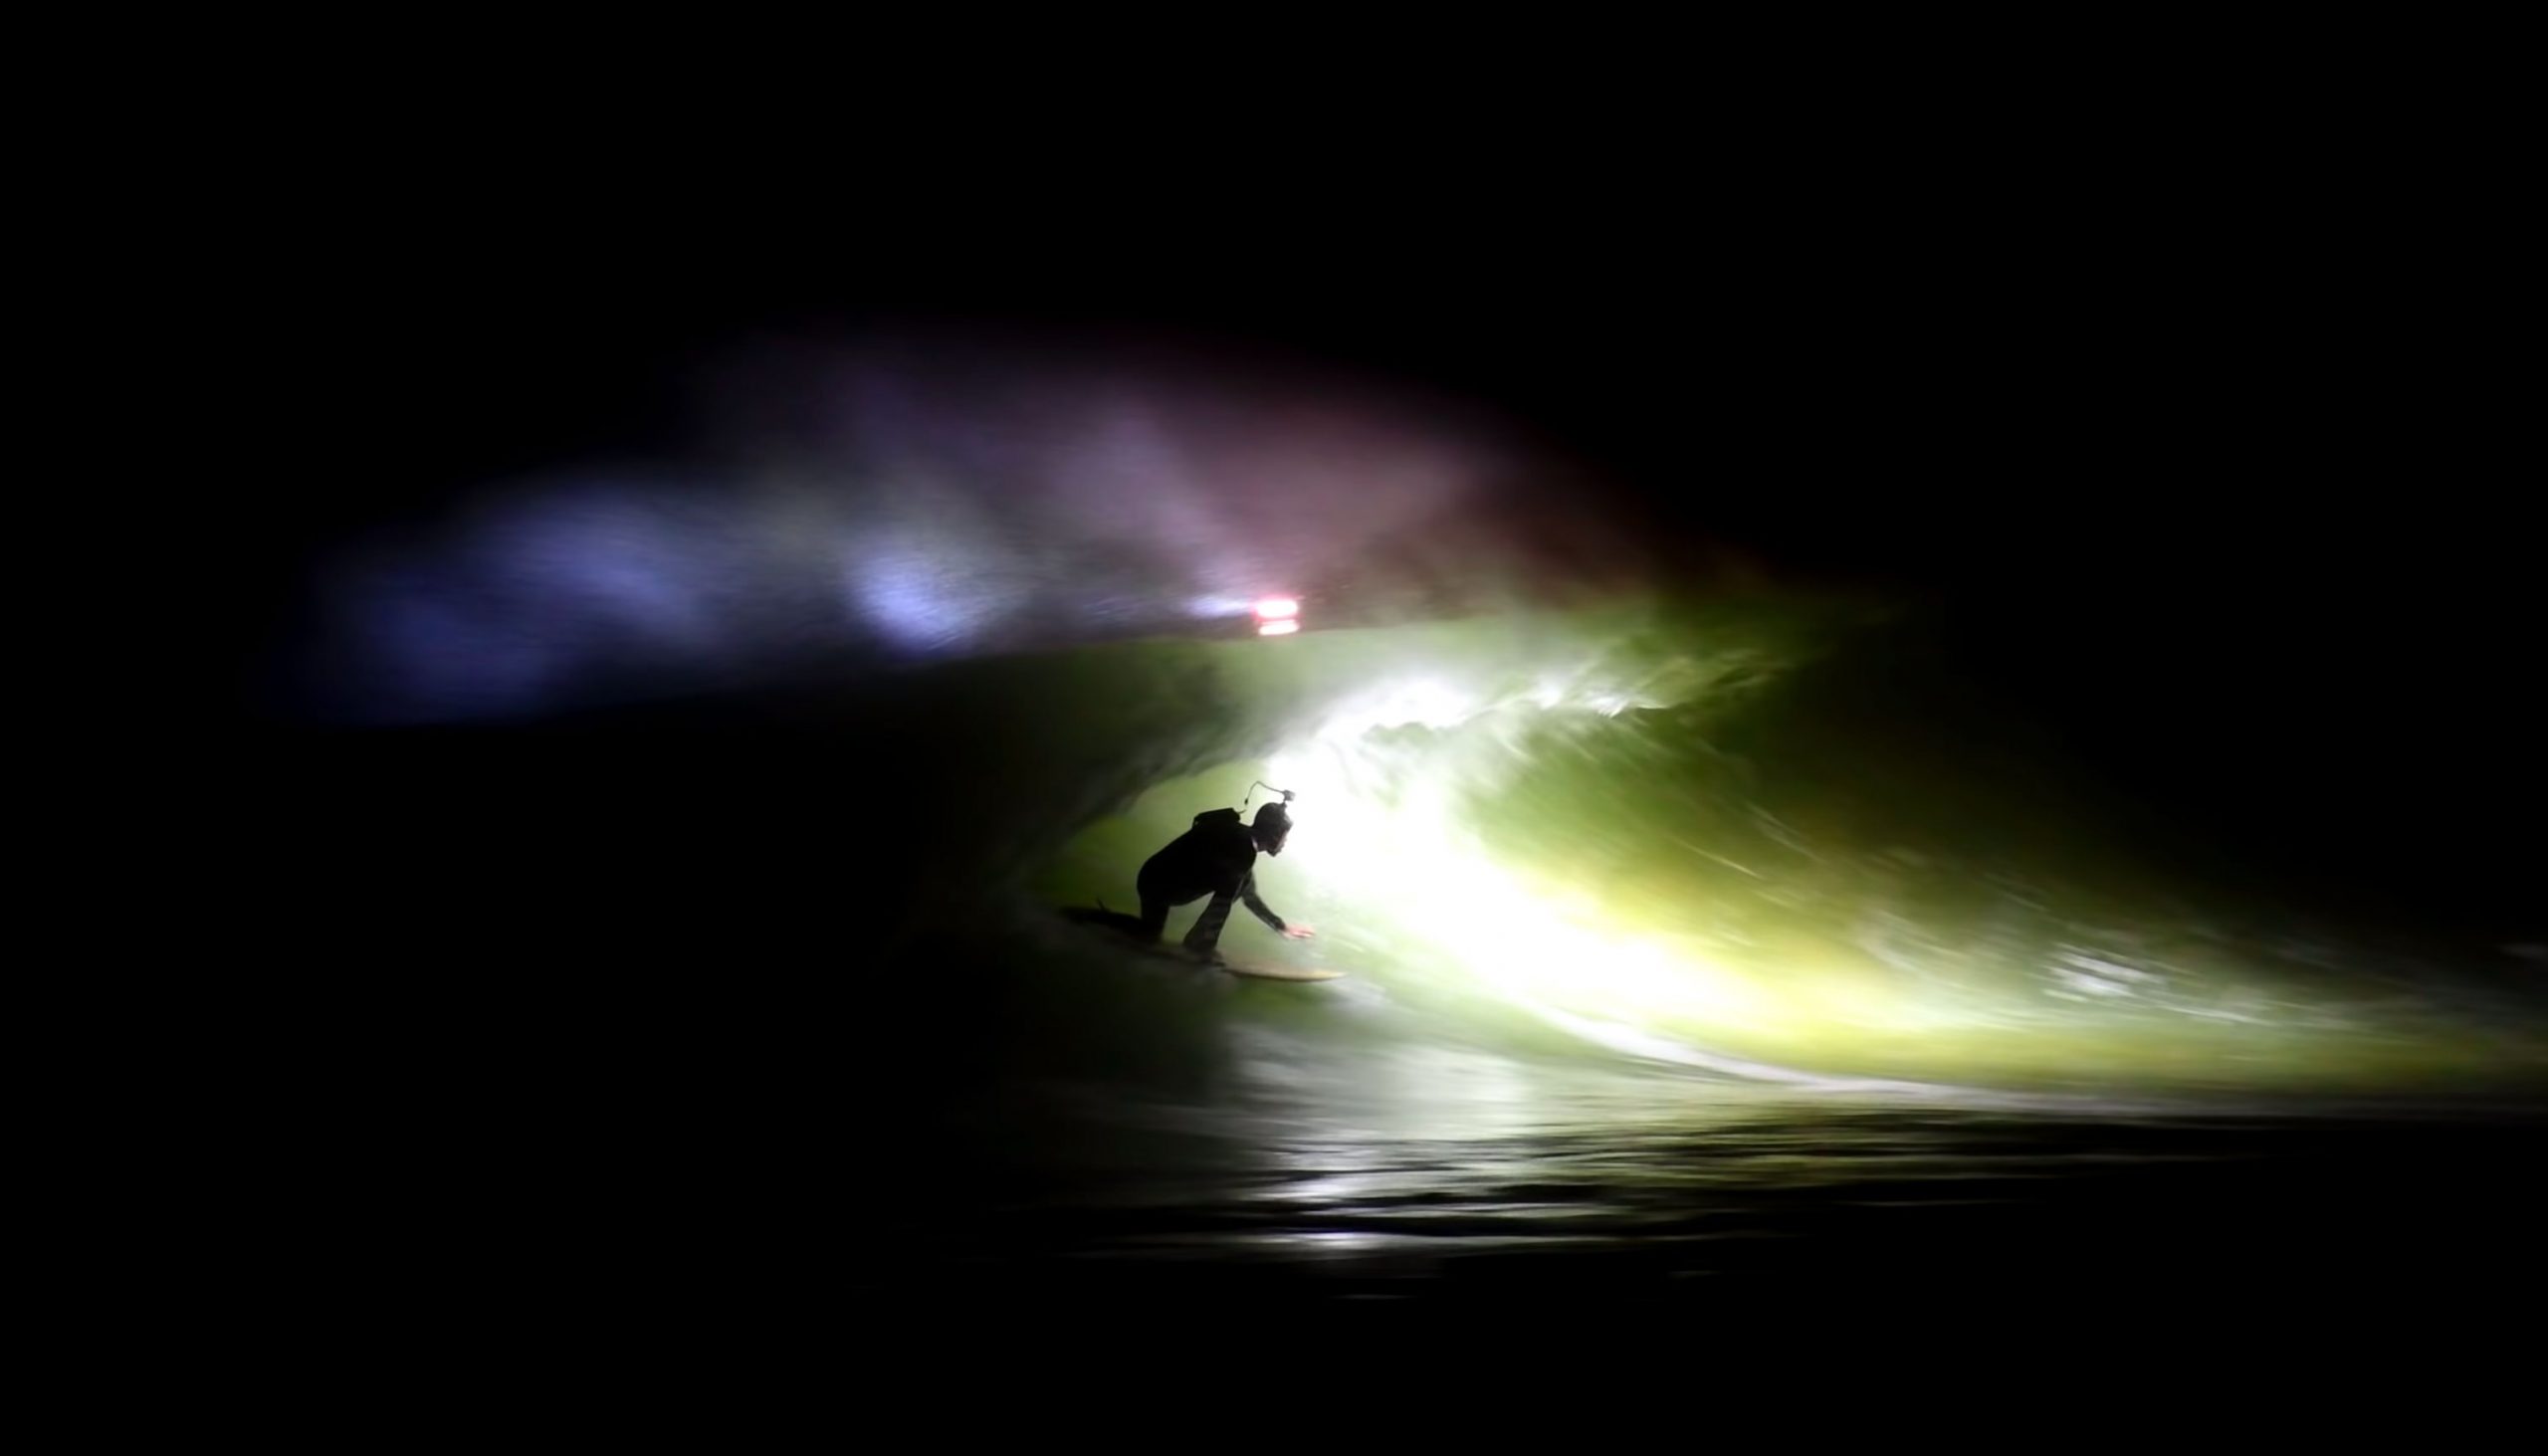 Innovation. Une lampe frontale pour surfer de nuit